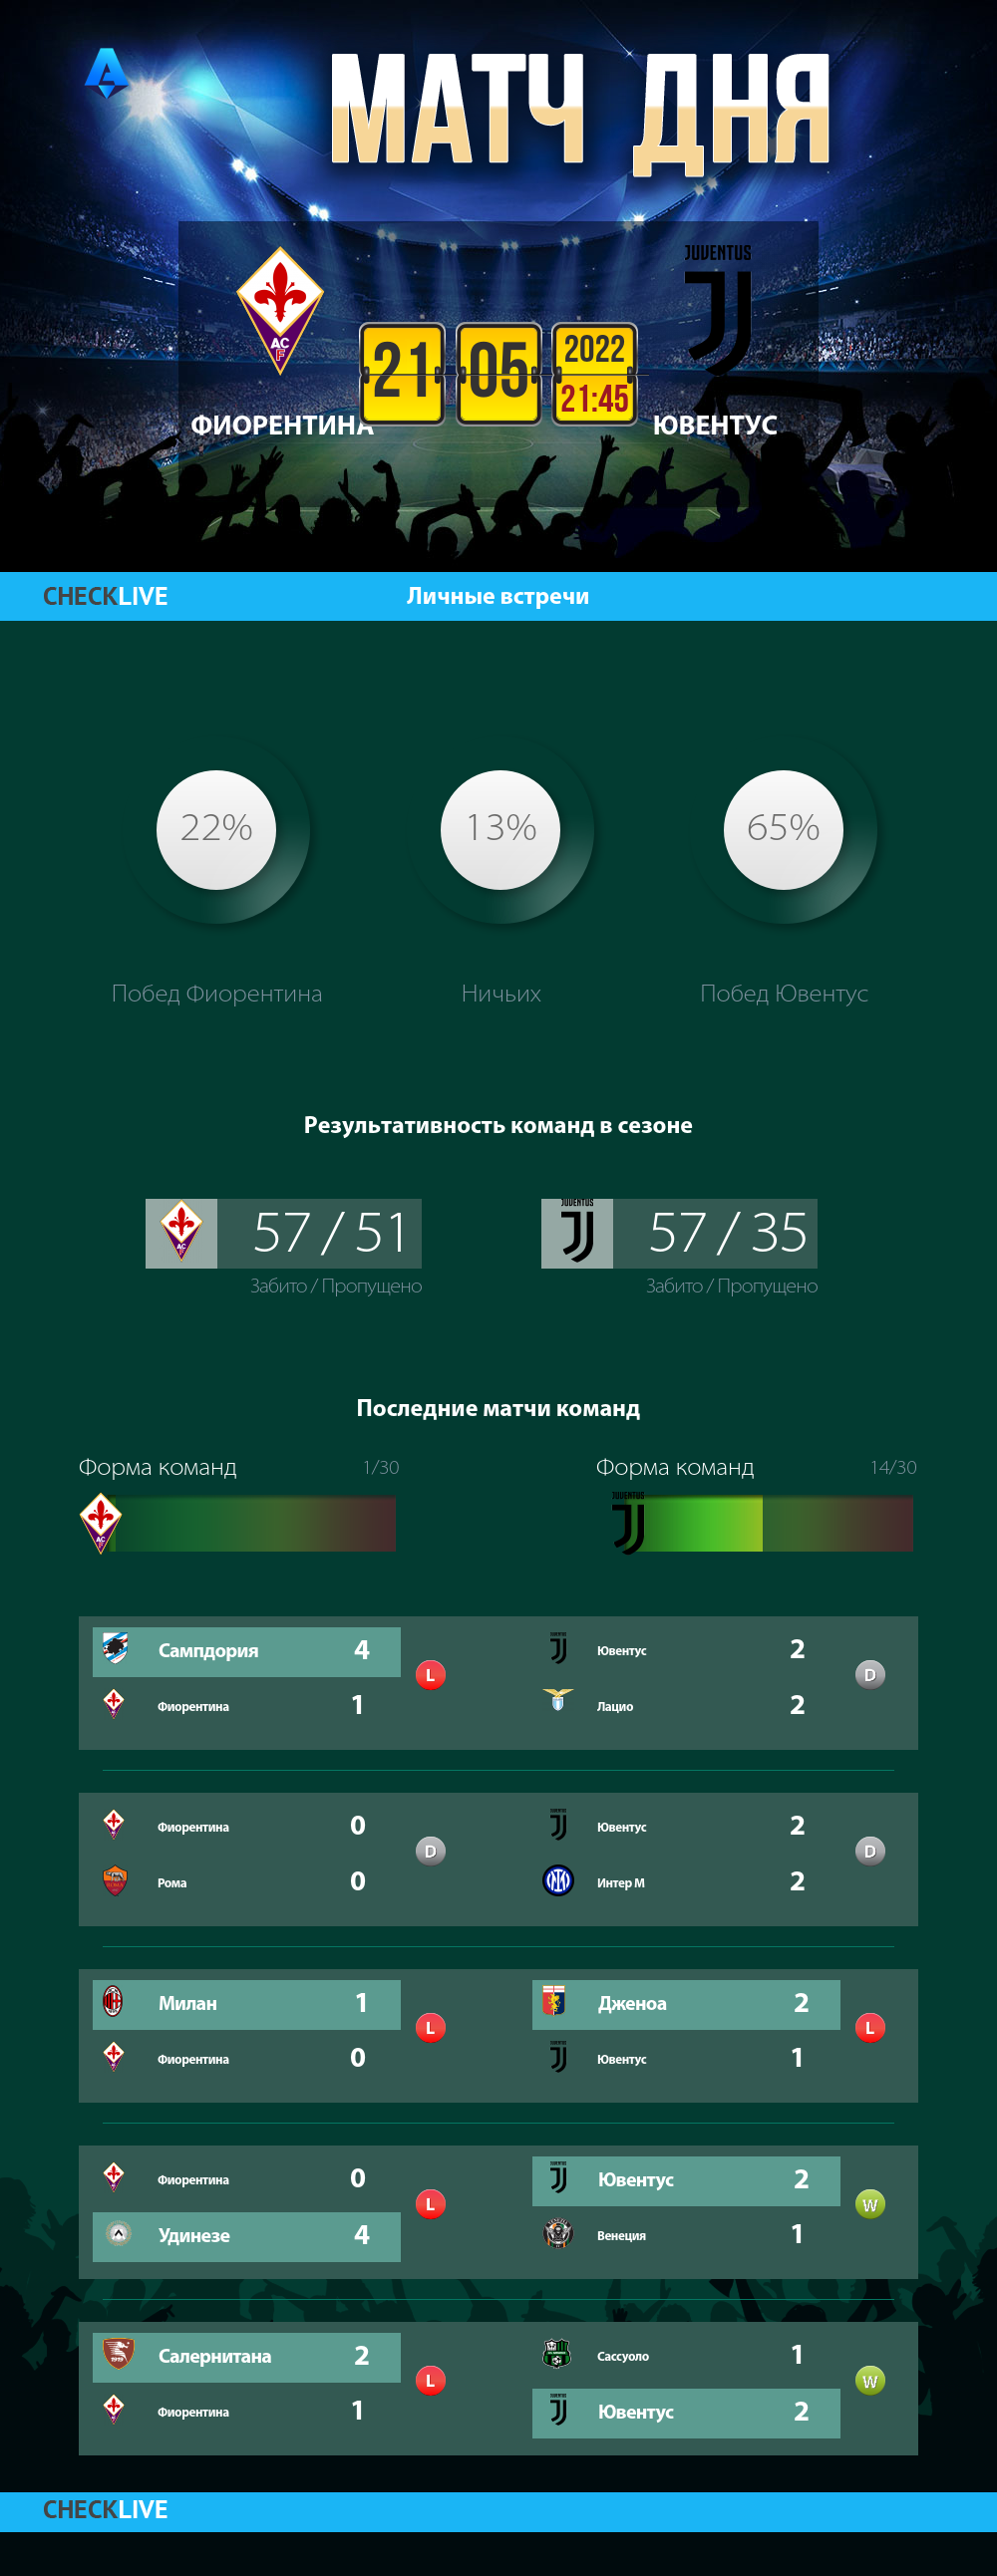 Инфографика Фиорентина и Ювентус матч дня 21.05.2022